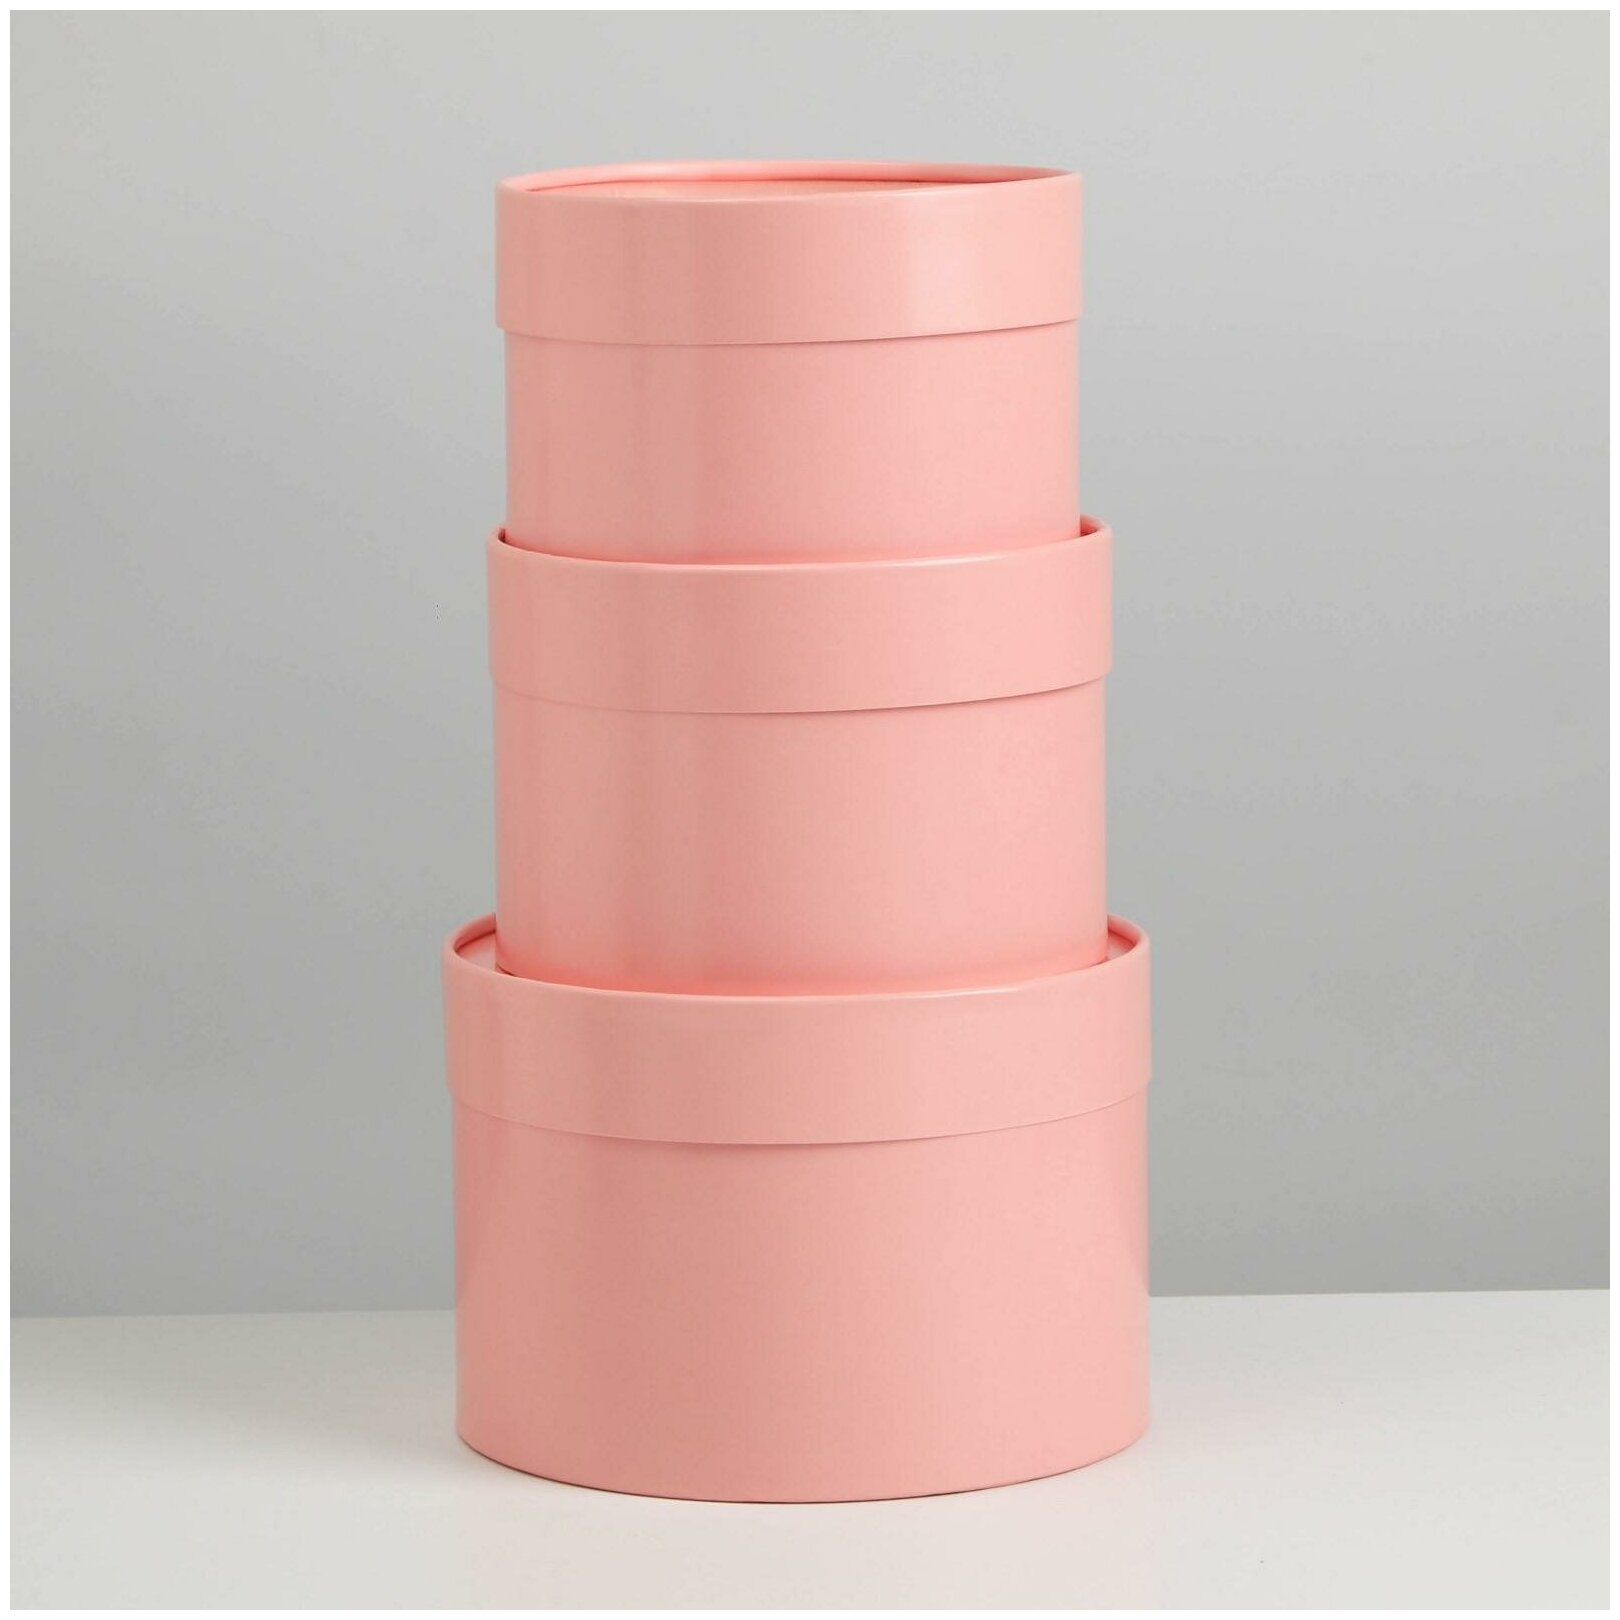 Набор шляпных коробок 3 в1 (16*10,14*9,13*8,5) розовый